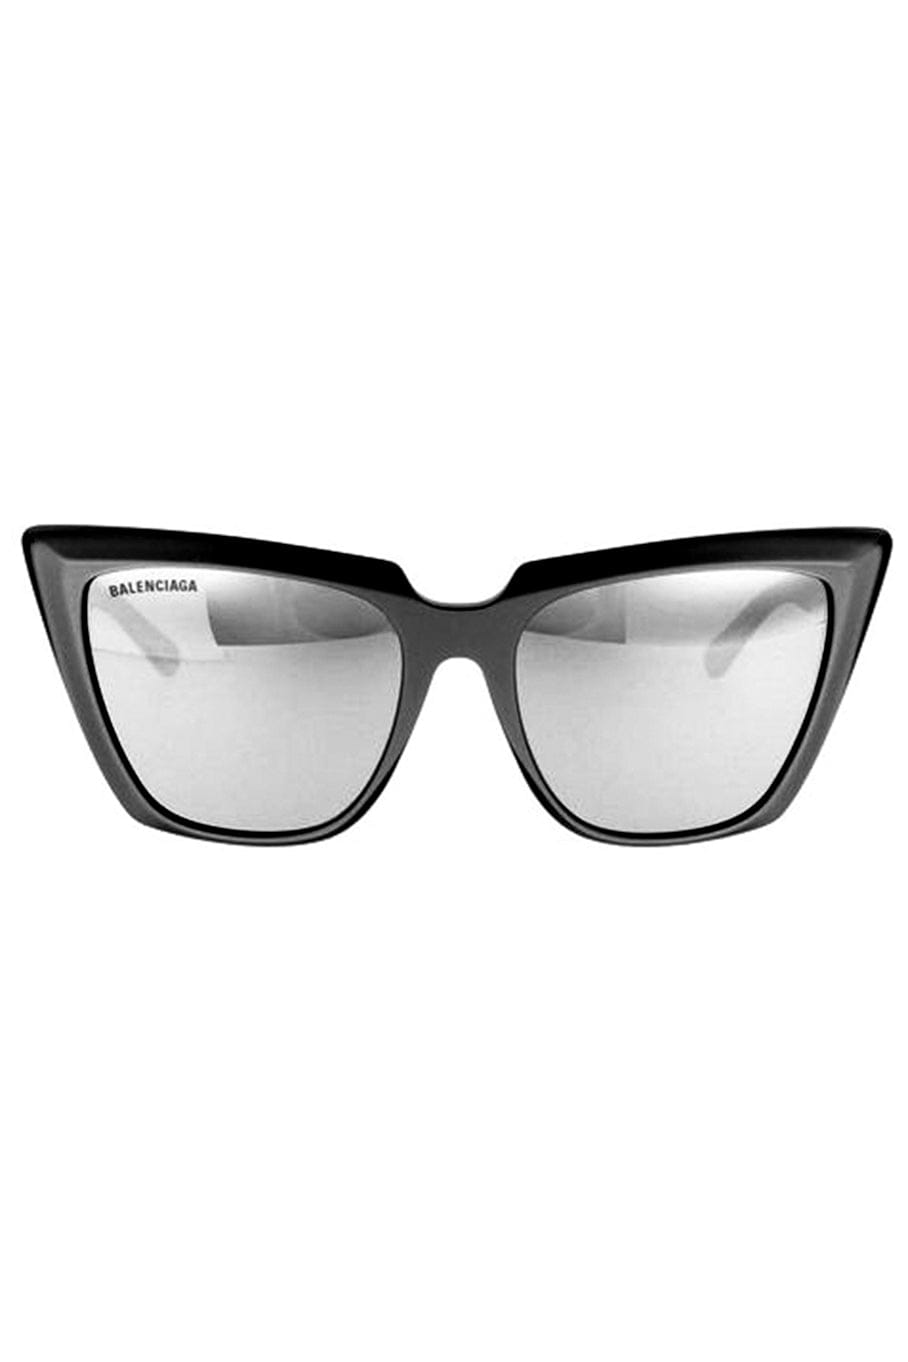 BALENCIAGA-Cat Eye Sunglasses - Silver-SILVER